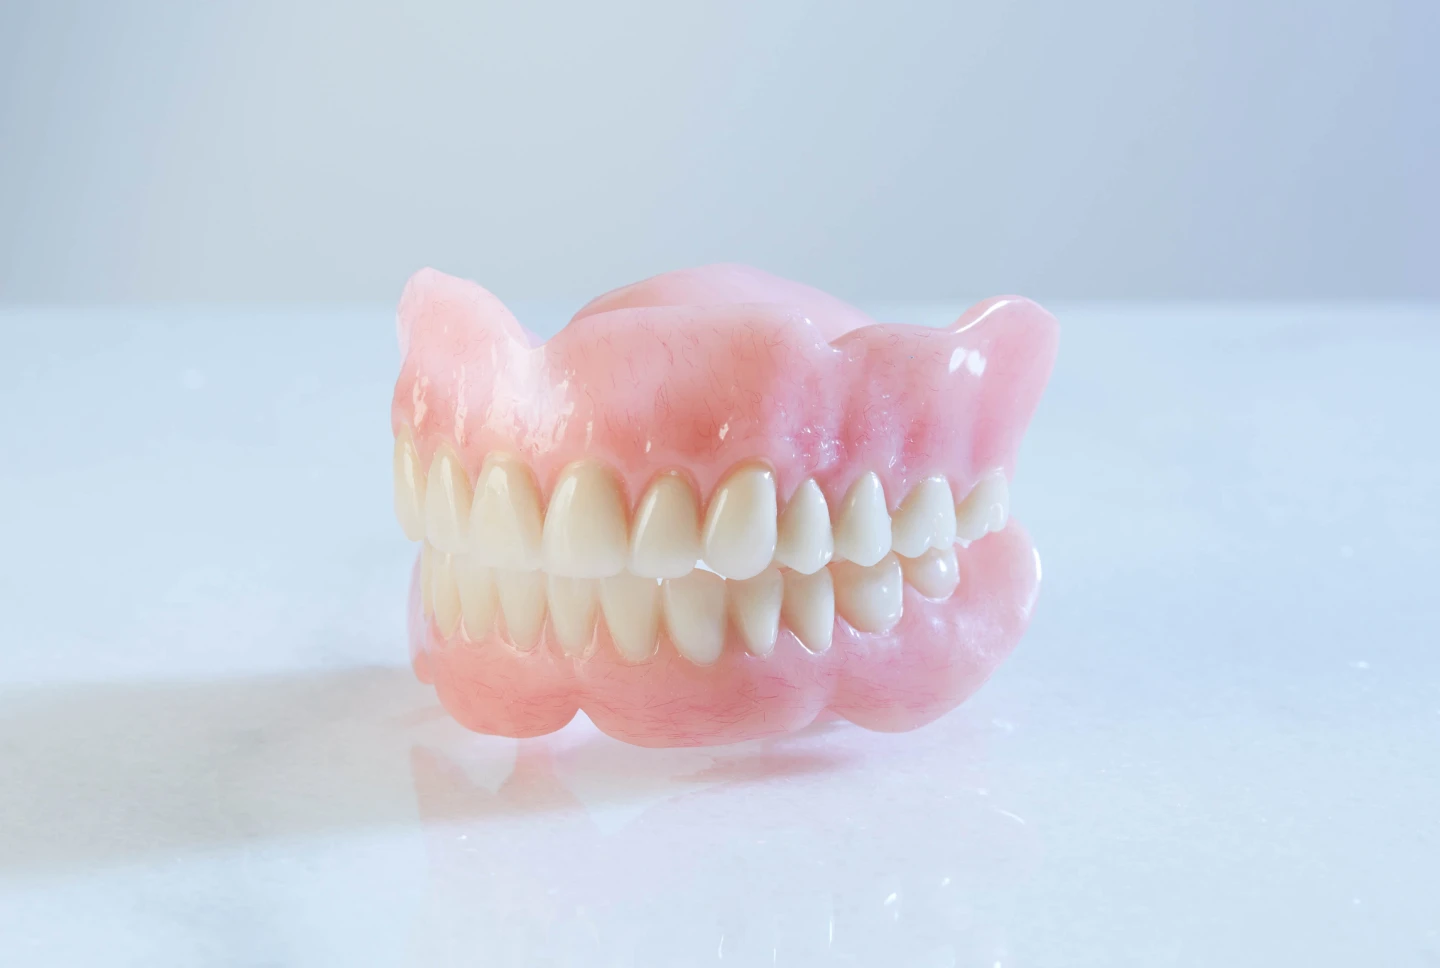 Aspen Dental full dentures. 